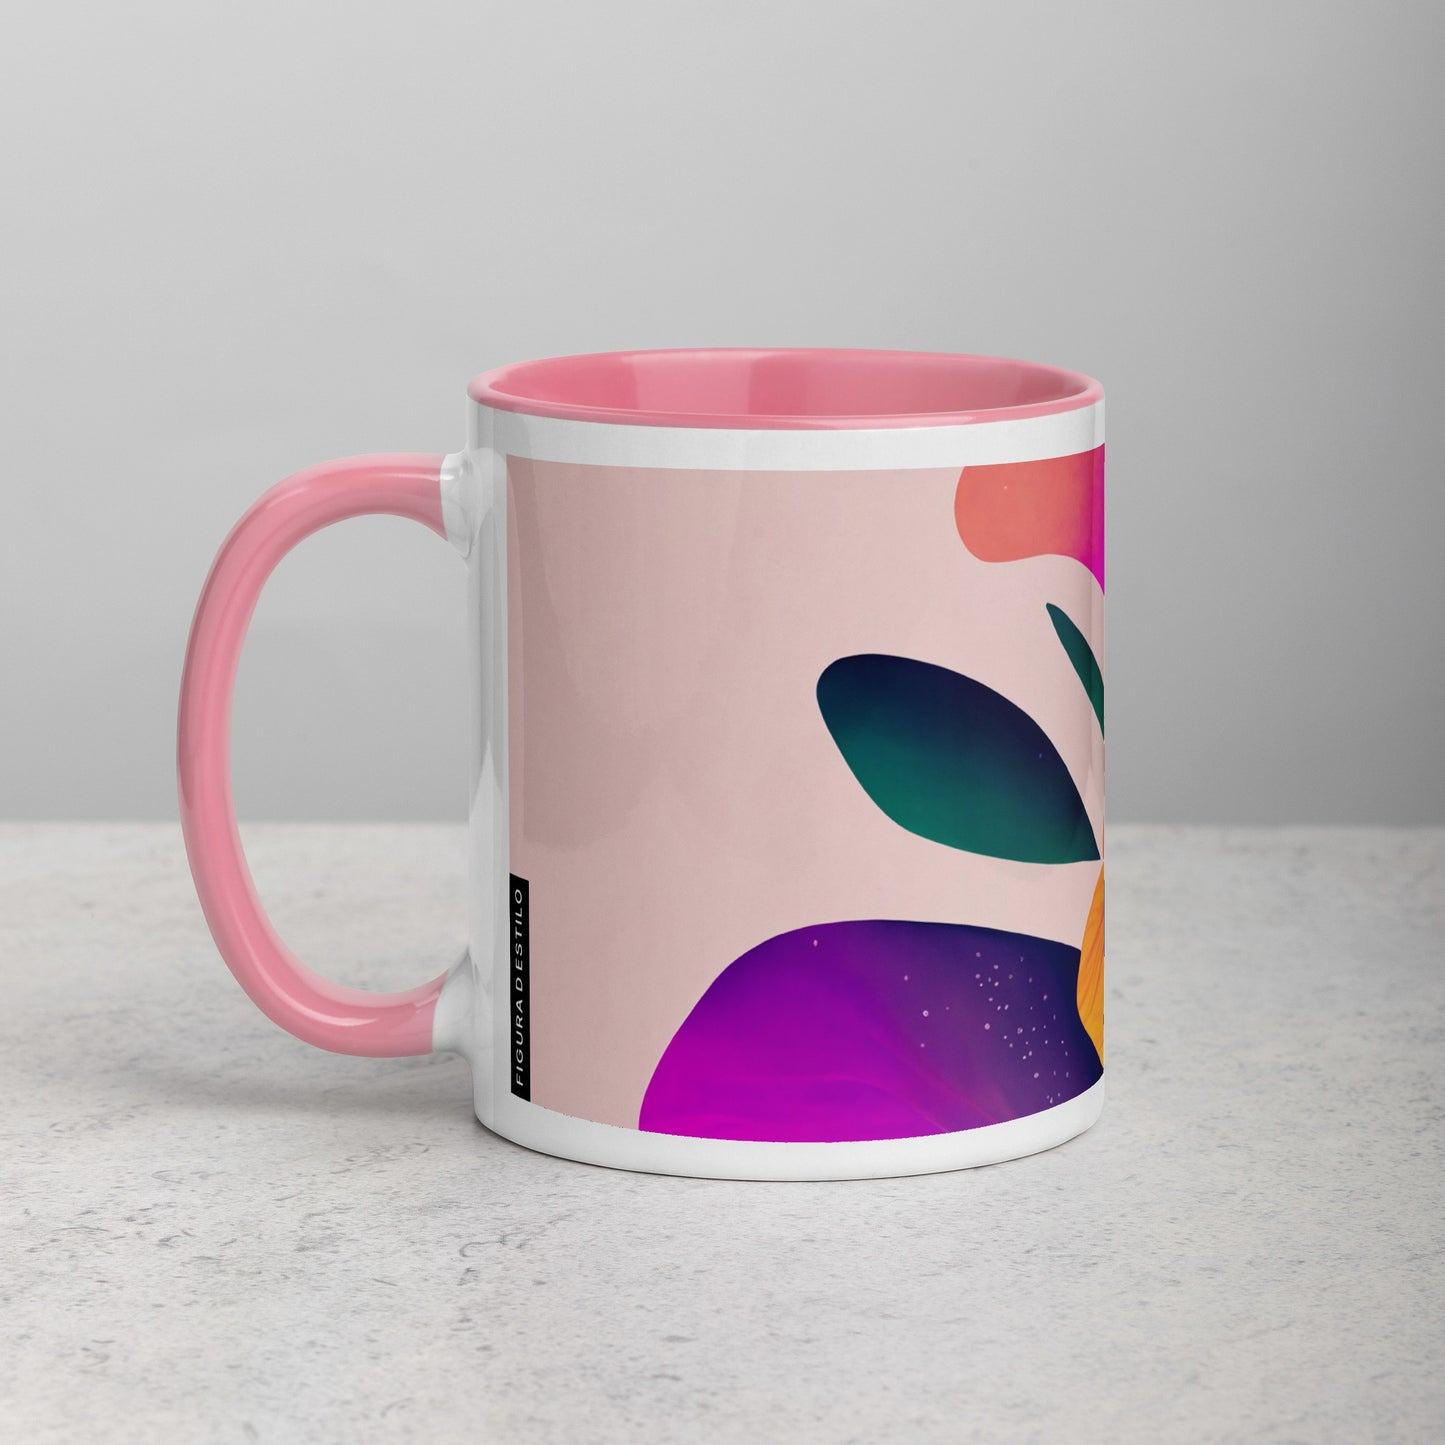 Zinnia Ceramic Mug with Color Inside